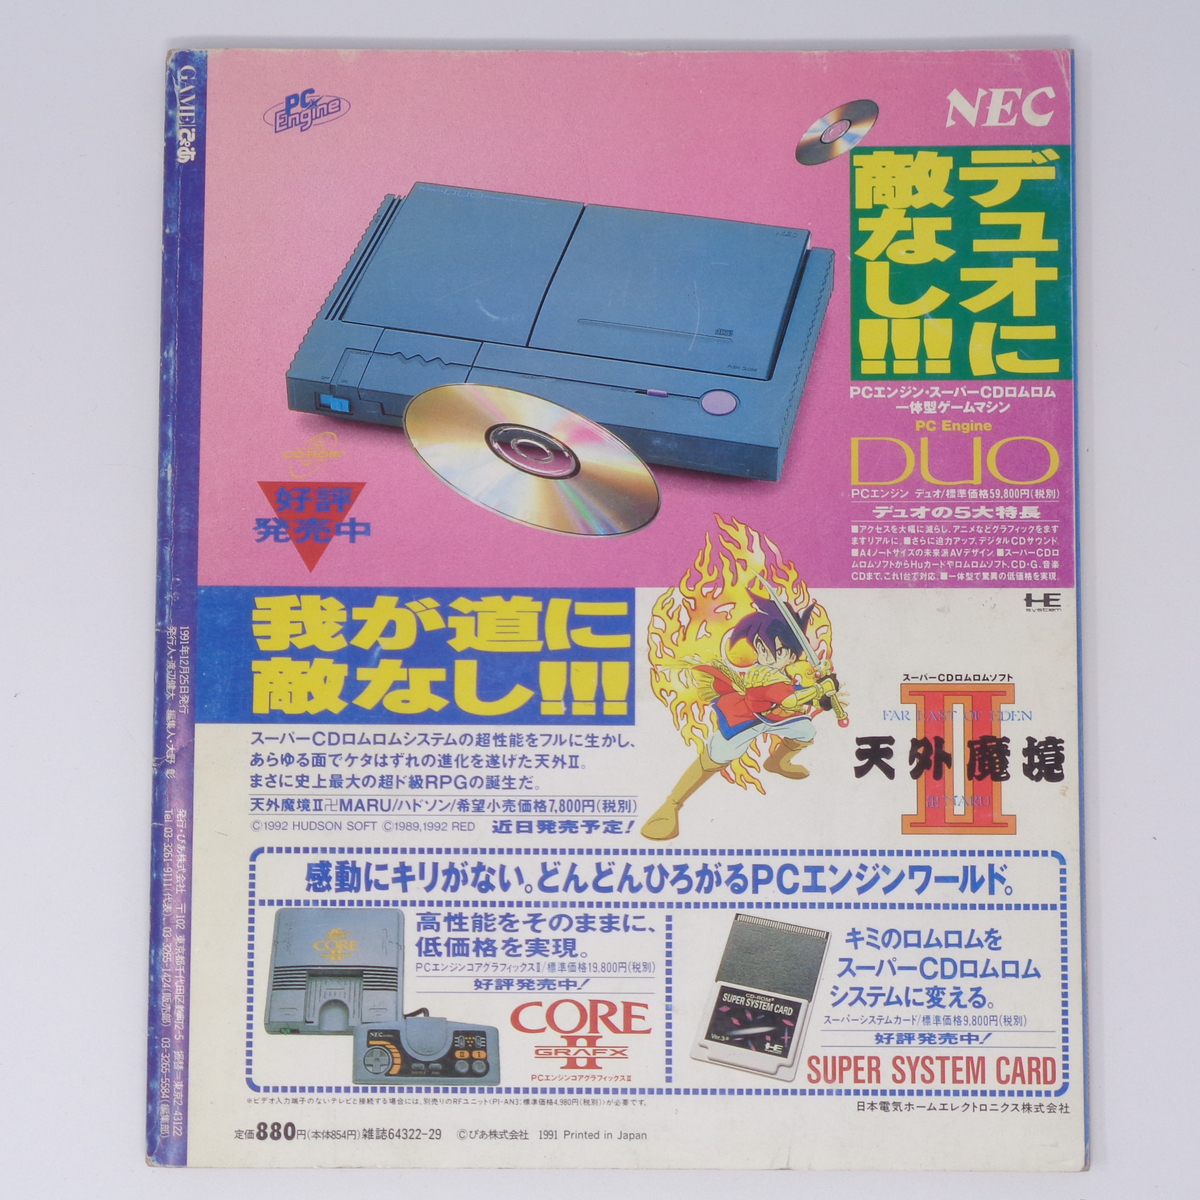 GAMEぴあ 1991年12月25日発行/ゲームがひらく電脳アミューズメント新世紀!/ゲーム雑誌[Free Shipping]_画像2